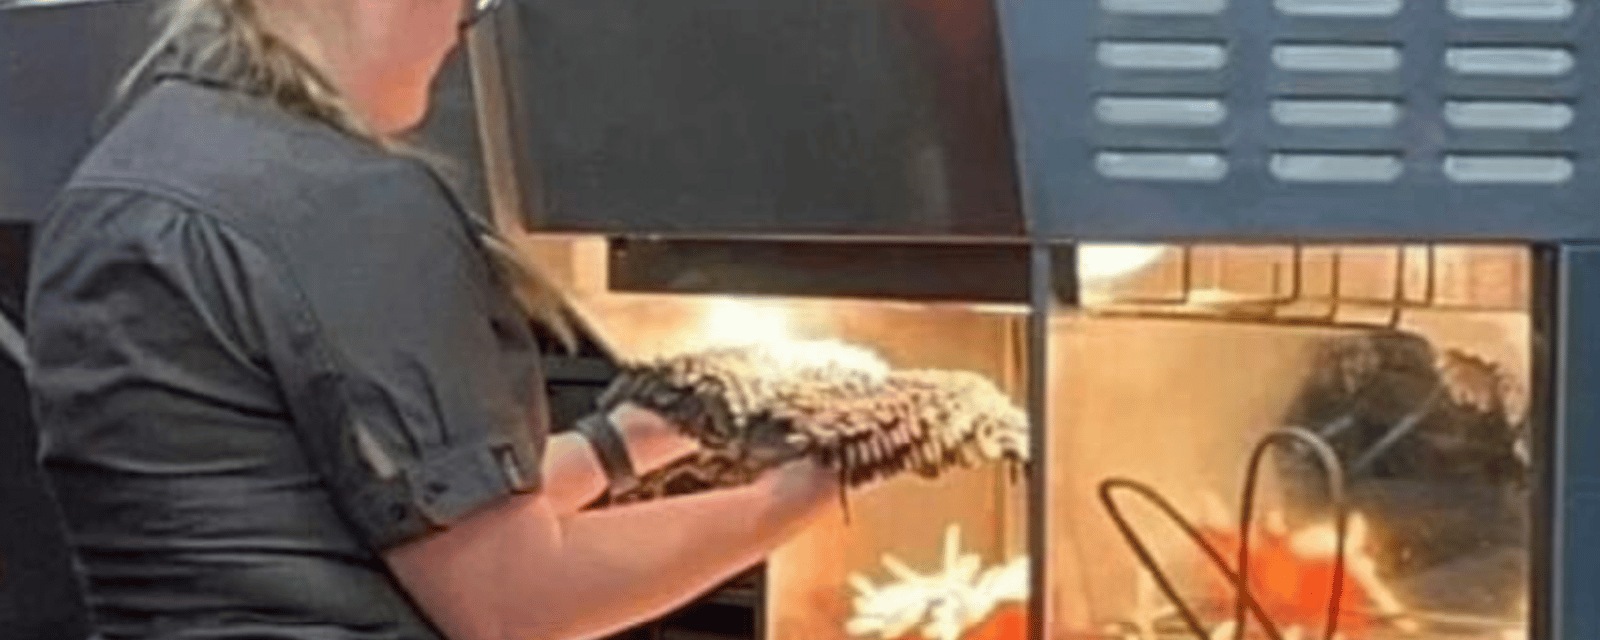 Une employée de McDonald's filmée alors qu'elle sèche une serpillère dans le réchaud à frites.